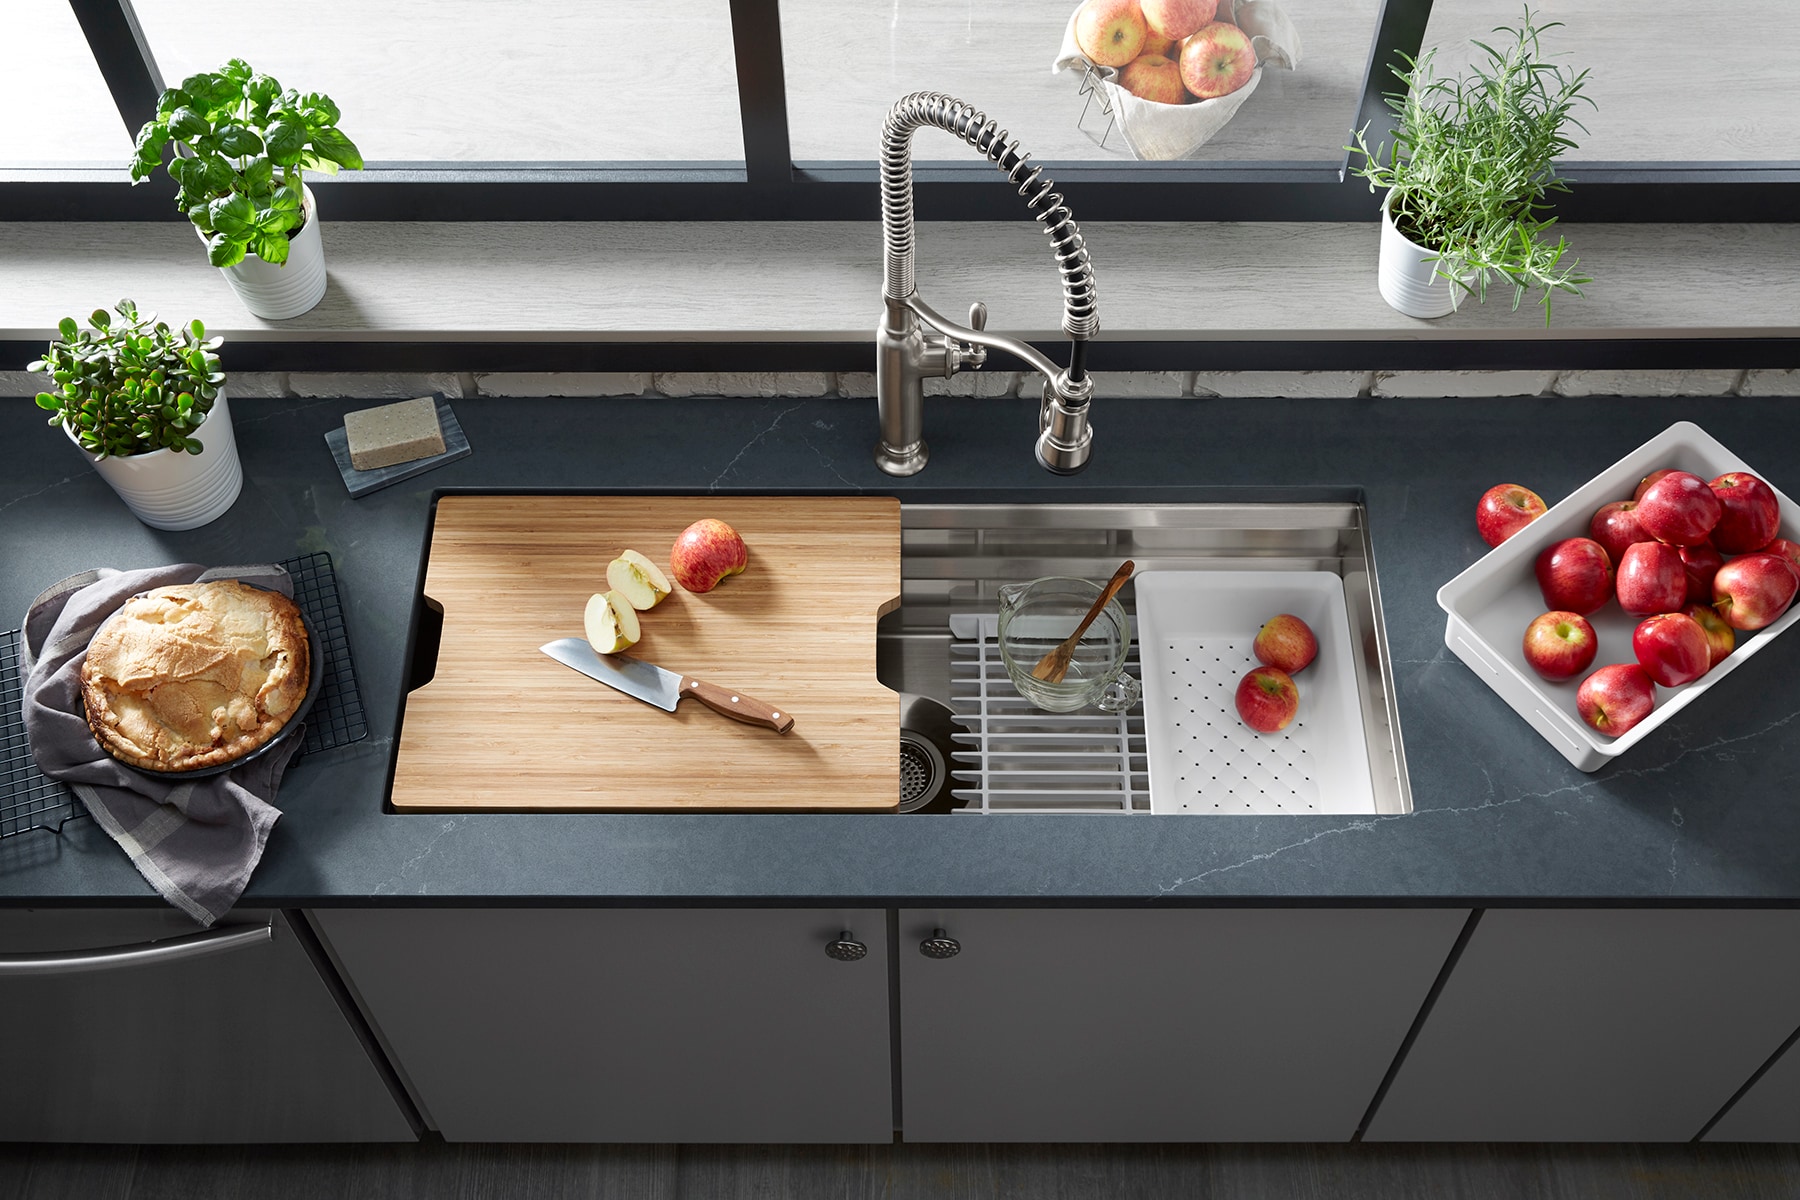 Neste 78cm Workstation Kitchen Sink with Accessories